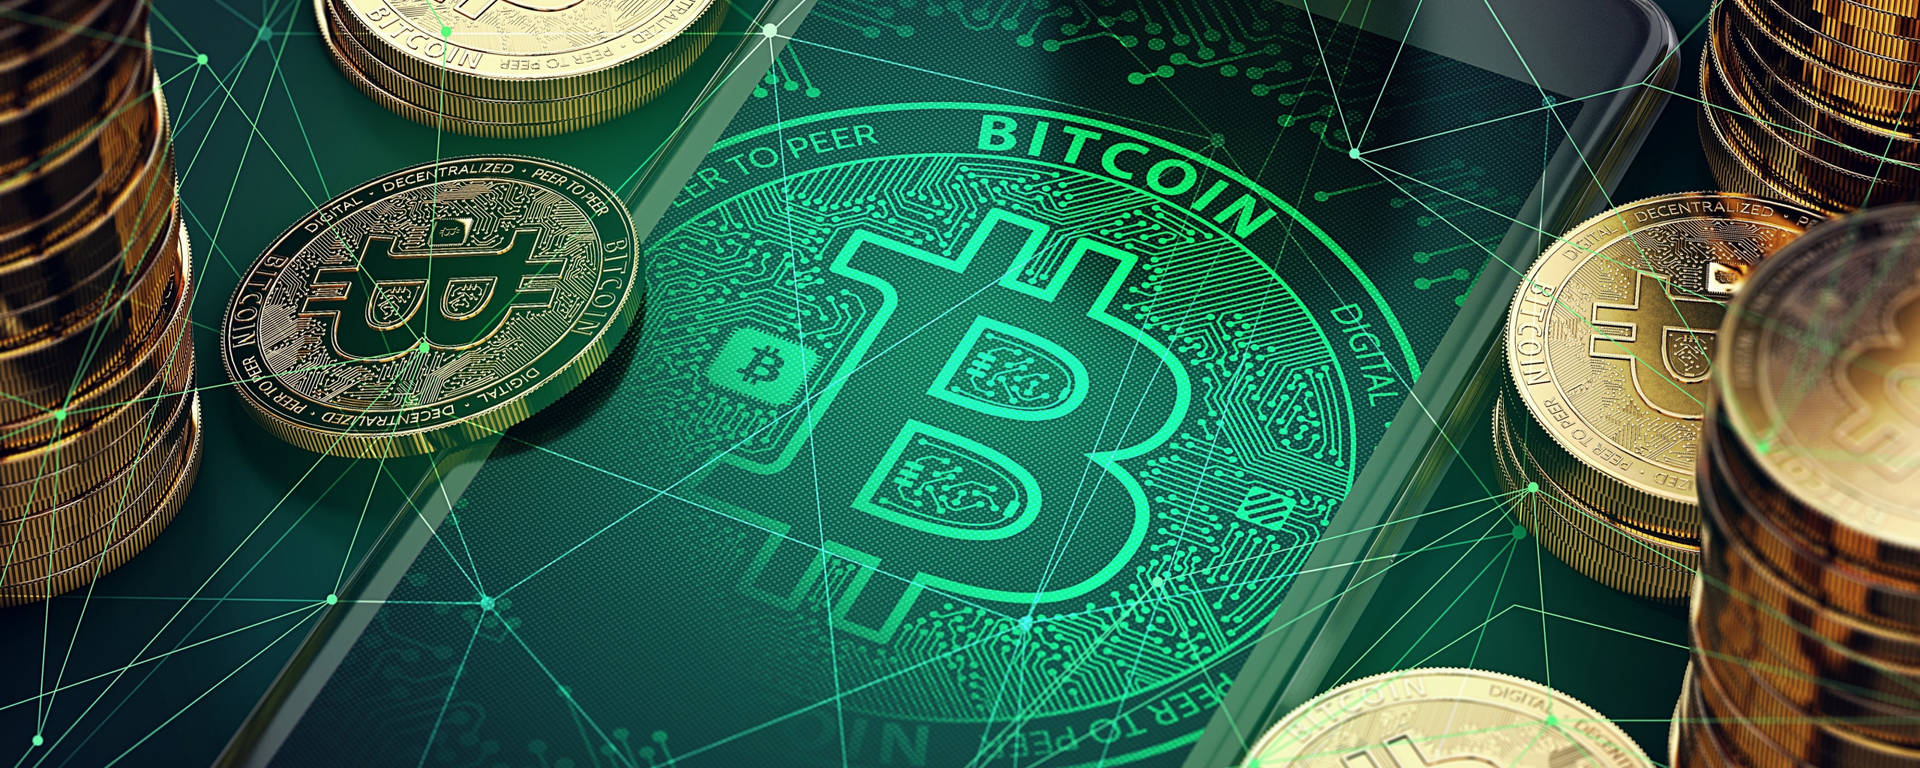 Bitcoinsymbol Auf Dem Handy In Einem Crypto-hintergrund Wallpaper